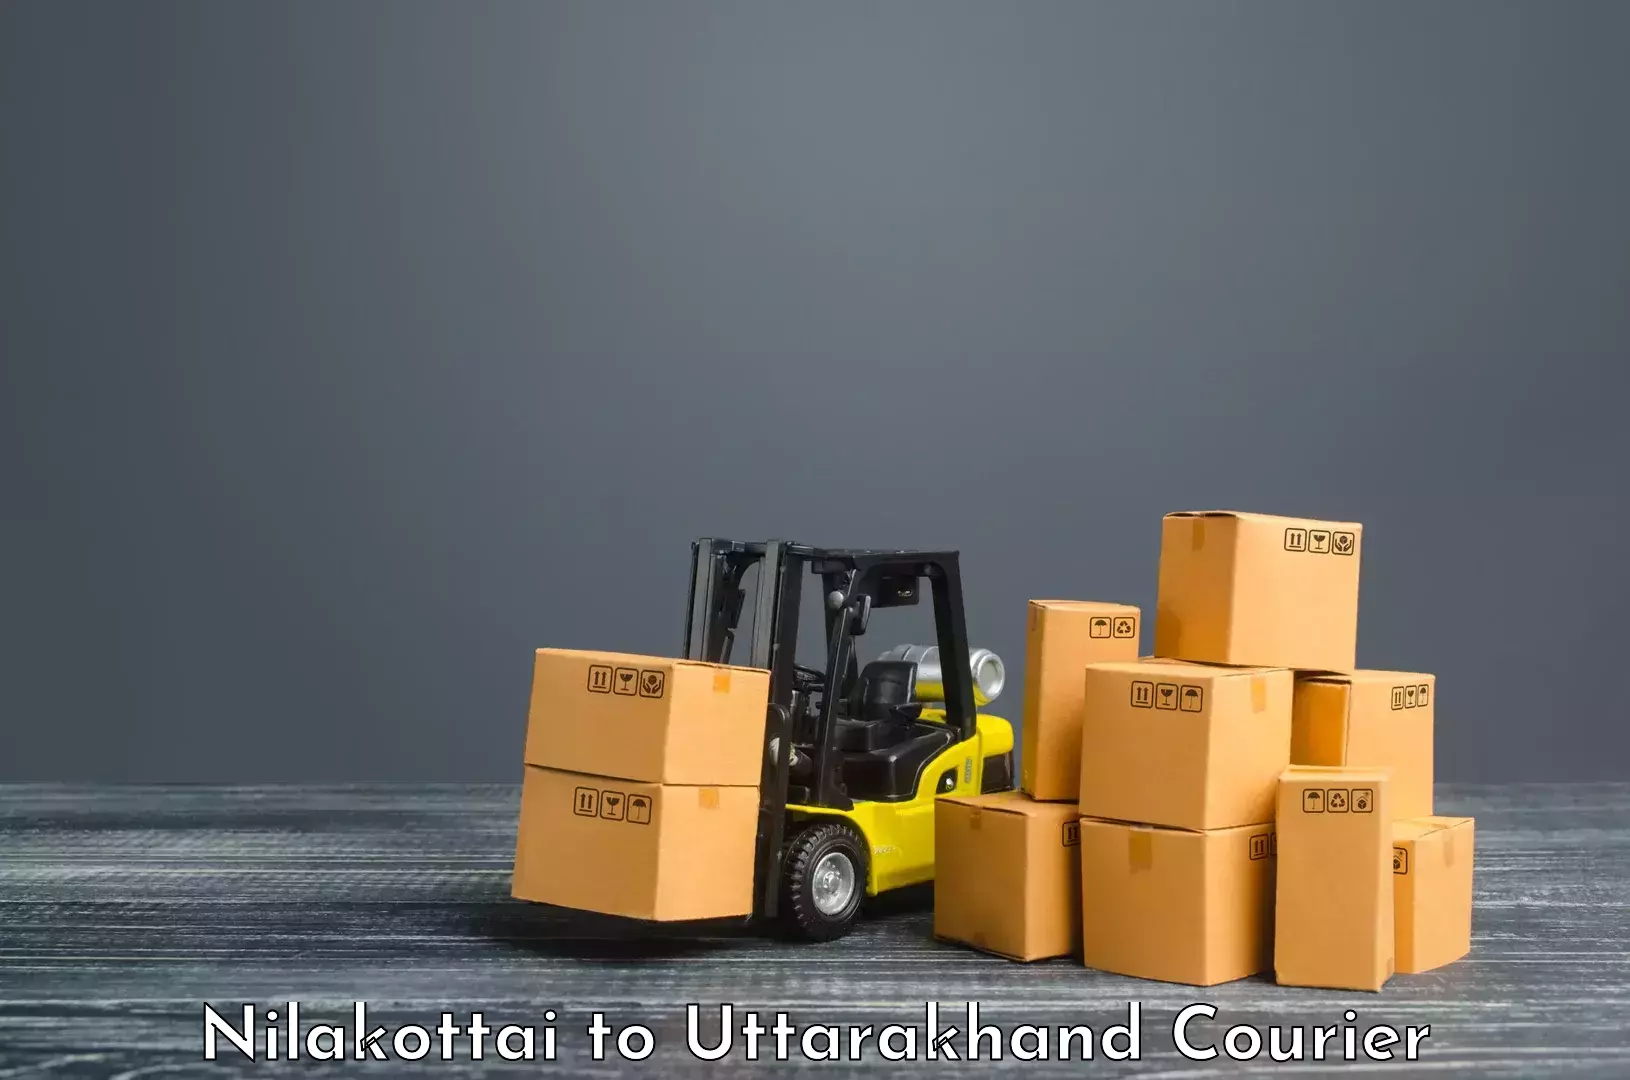 Personal parcel delivery Nilakottai to Pithoragarh